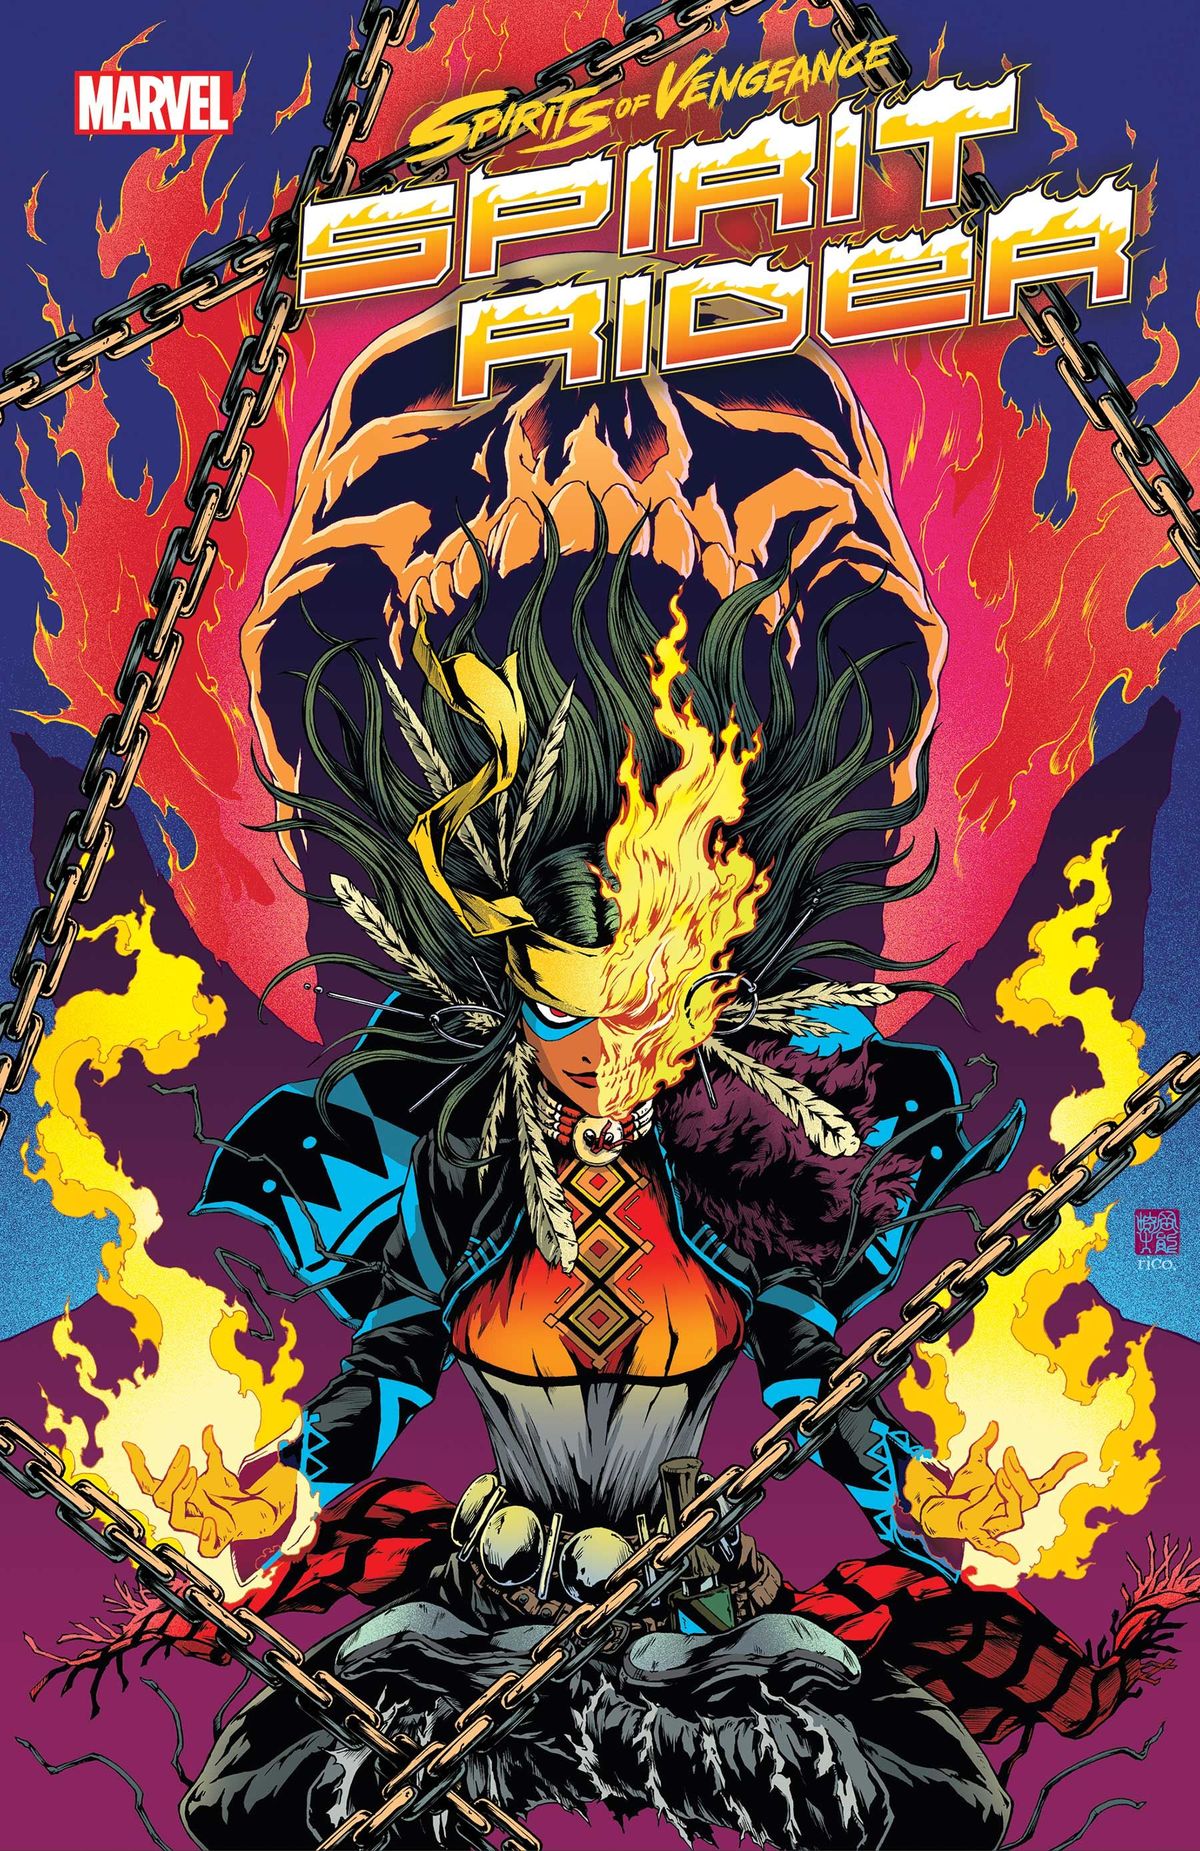 Marvels Sorcerer Supreme / Ghost Rider Hybrid vender tilbage i august (eksklusiv)